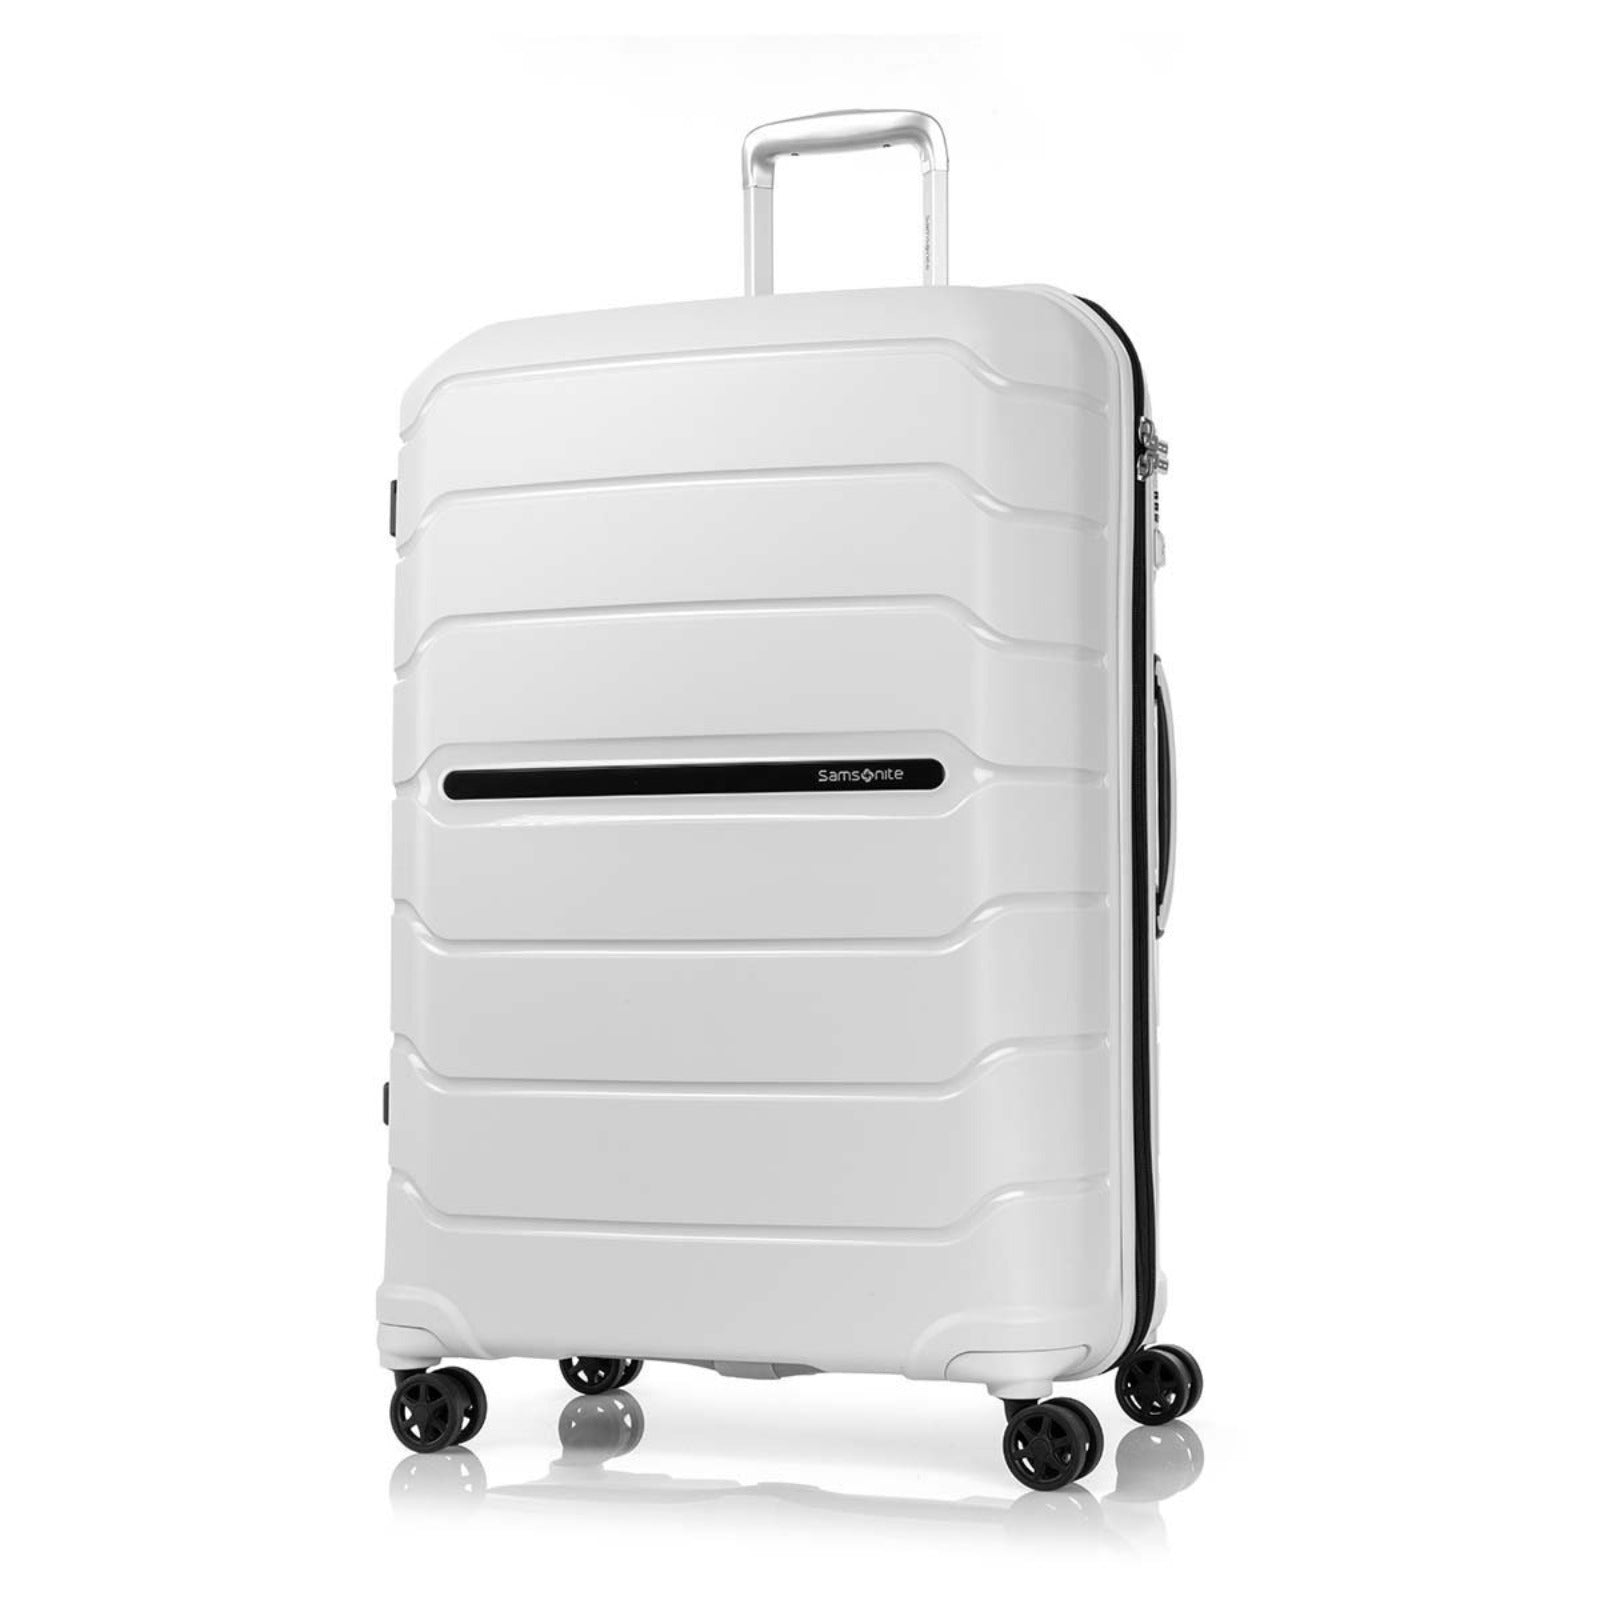 Samsonite_Oc2lite_75cm_Suitcase_Off_White_Front